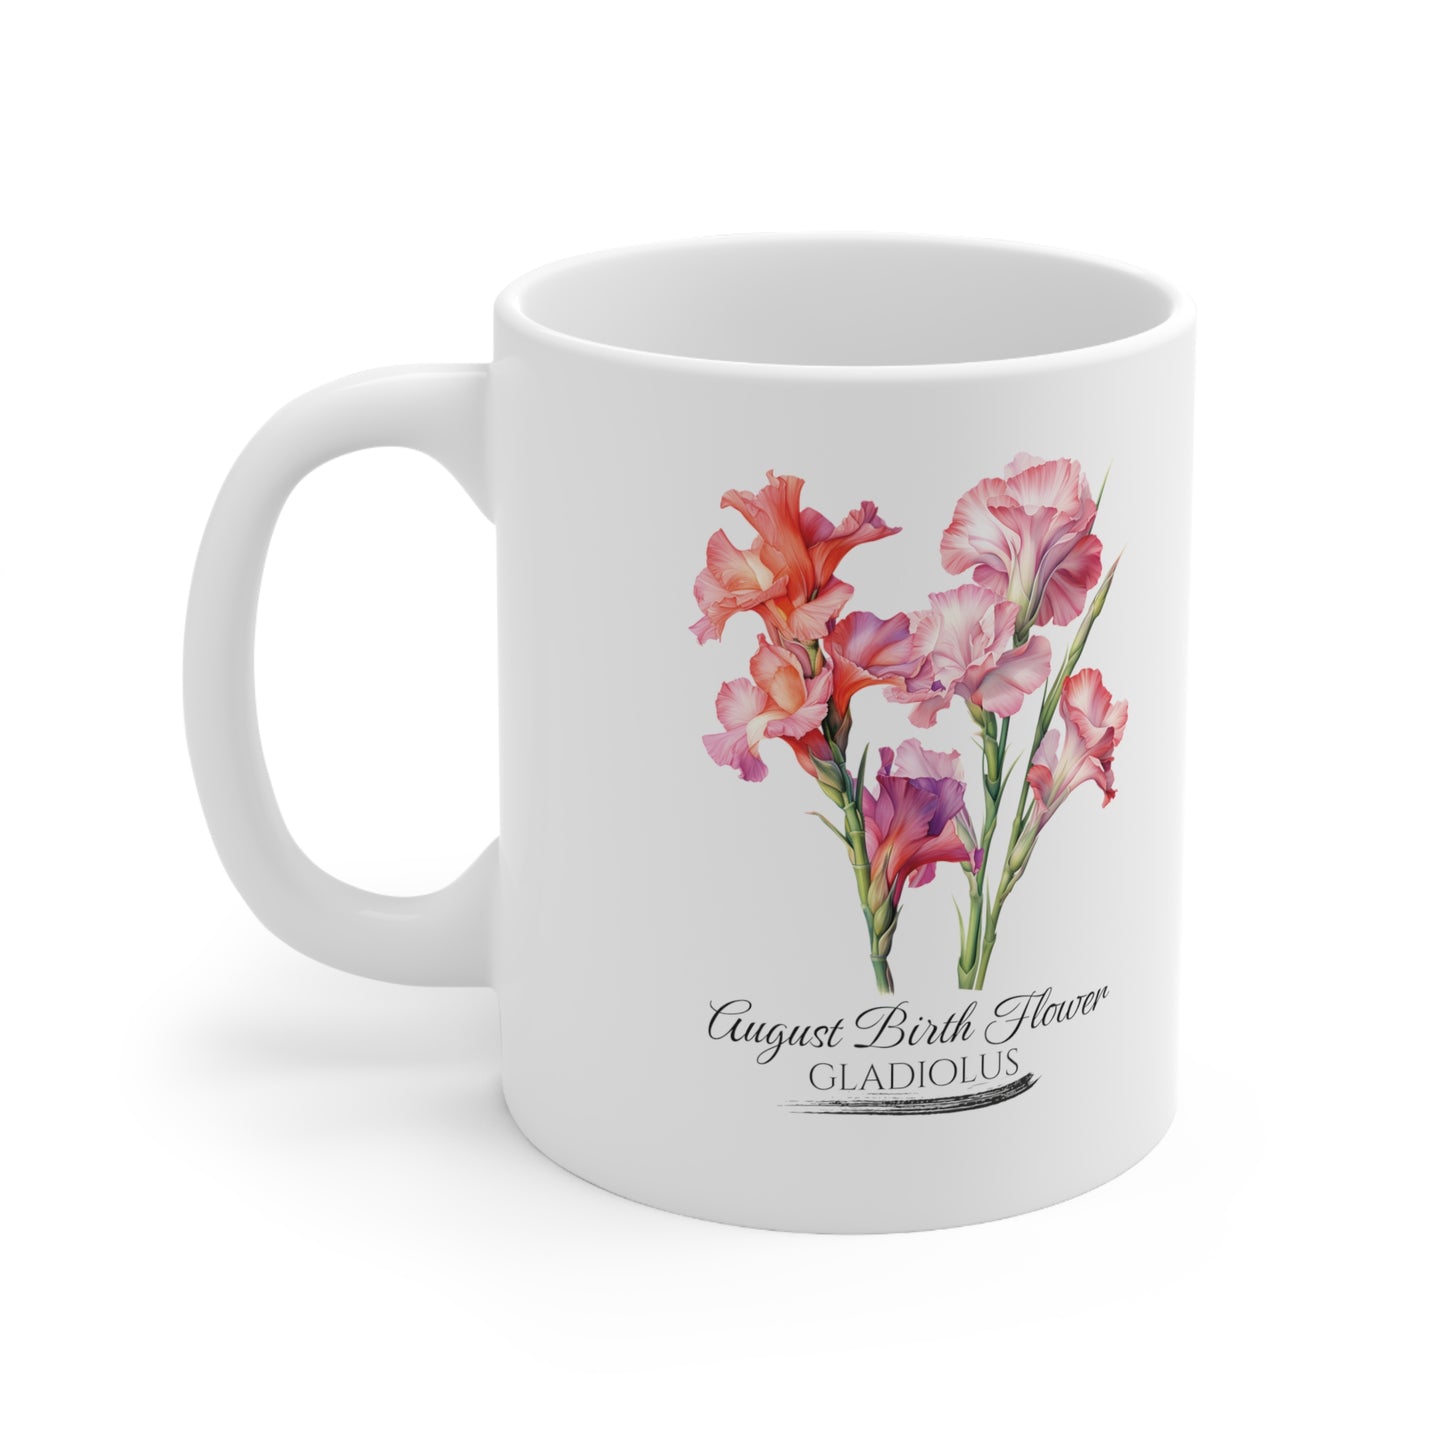 August Birth Flower (Gladiolus): Ceramic Mug 11oz